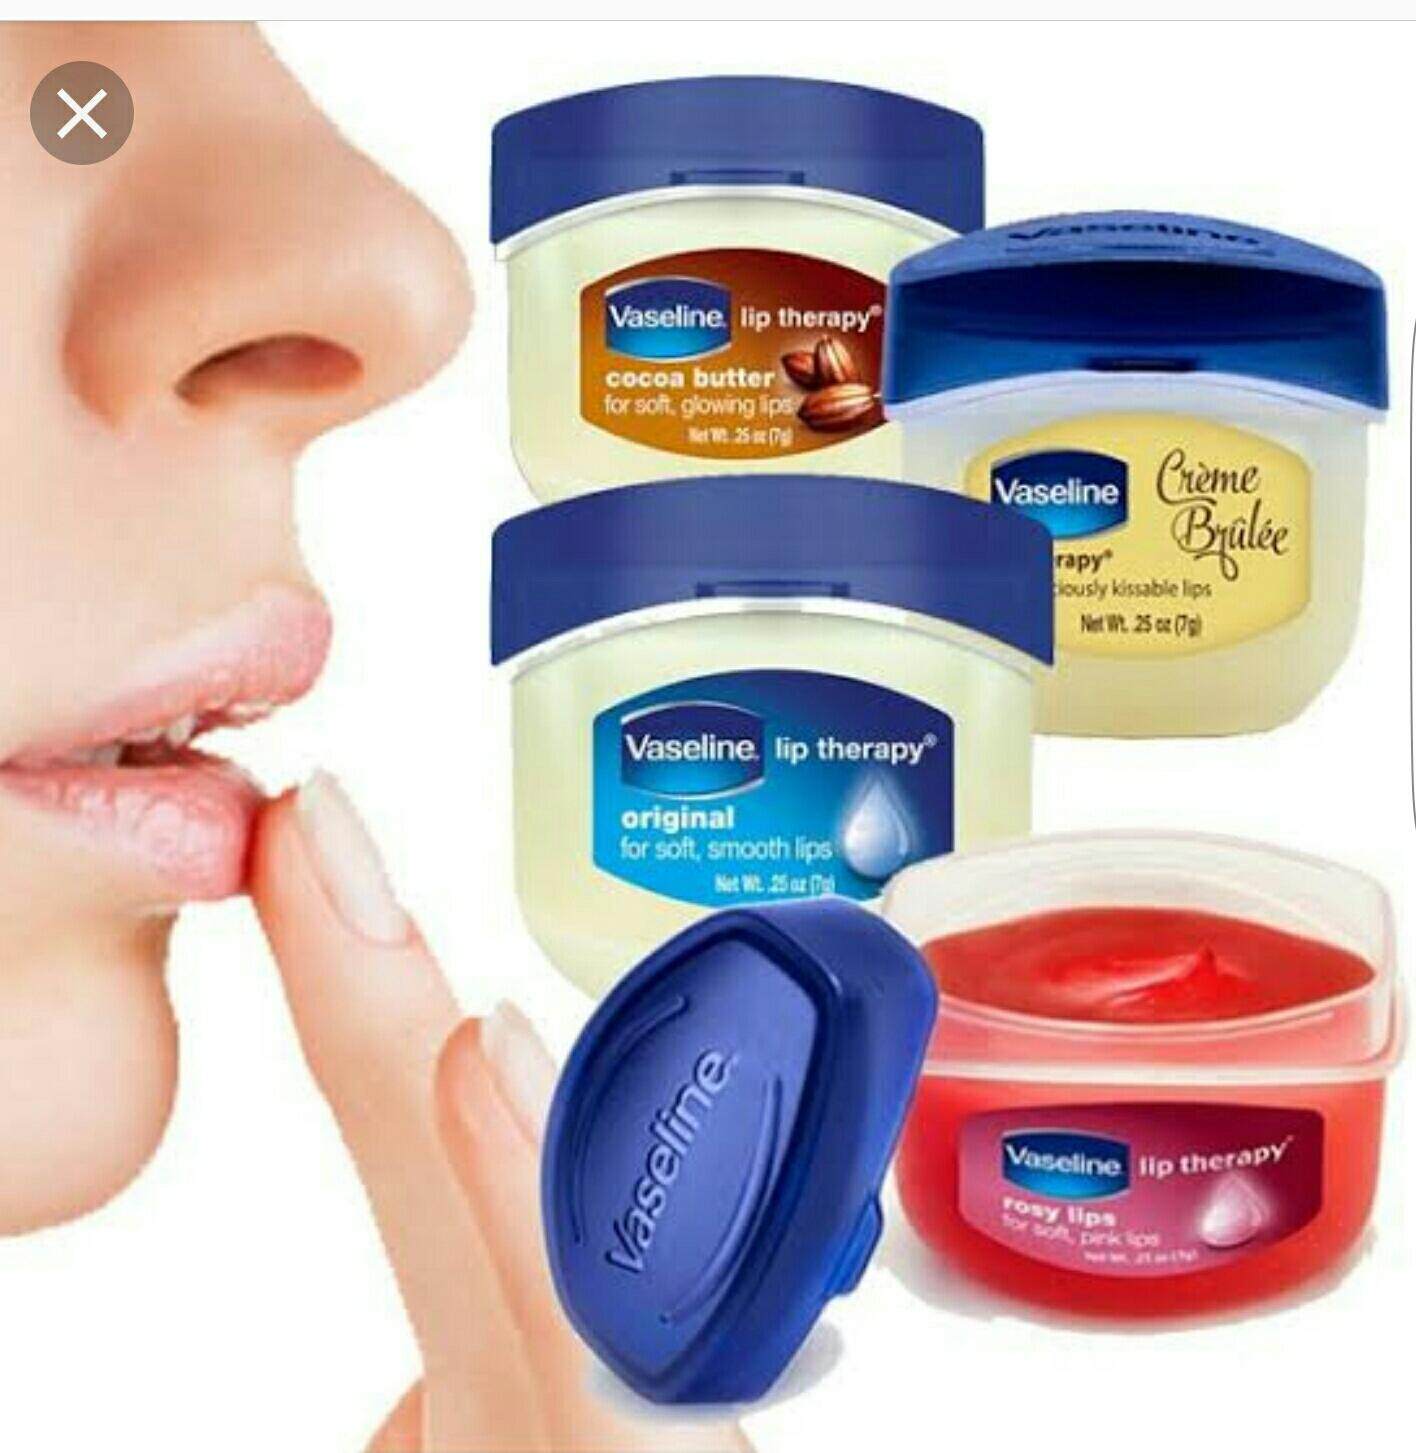 Vaseline Lip Therapy 7g ลิปบาล์มสูตรกุหลาบและน้ำมันสกัดจากอัลมอนต์ ช่วยปกป้องดูแลริมฝีปากของคุณให้ดูอวบอิ่มน่าสัมผัส พร้อมให้ริมฝีปากเนียนนุ่มชุ่มชื้นยาวนาน